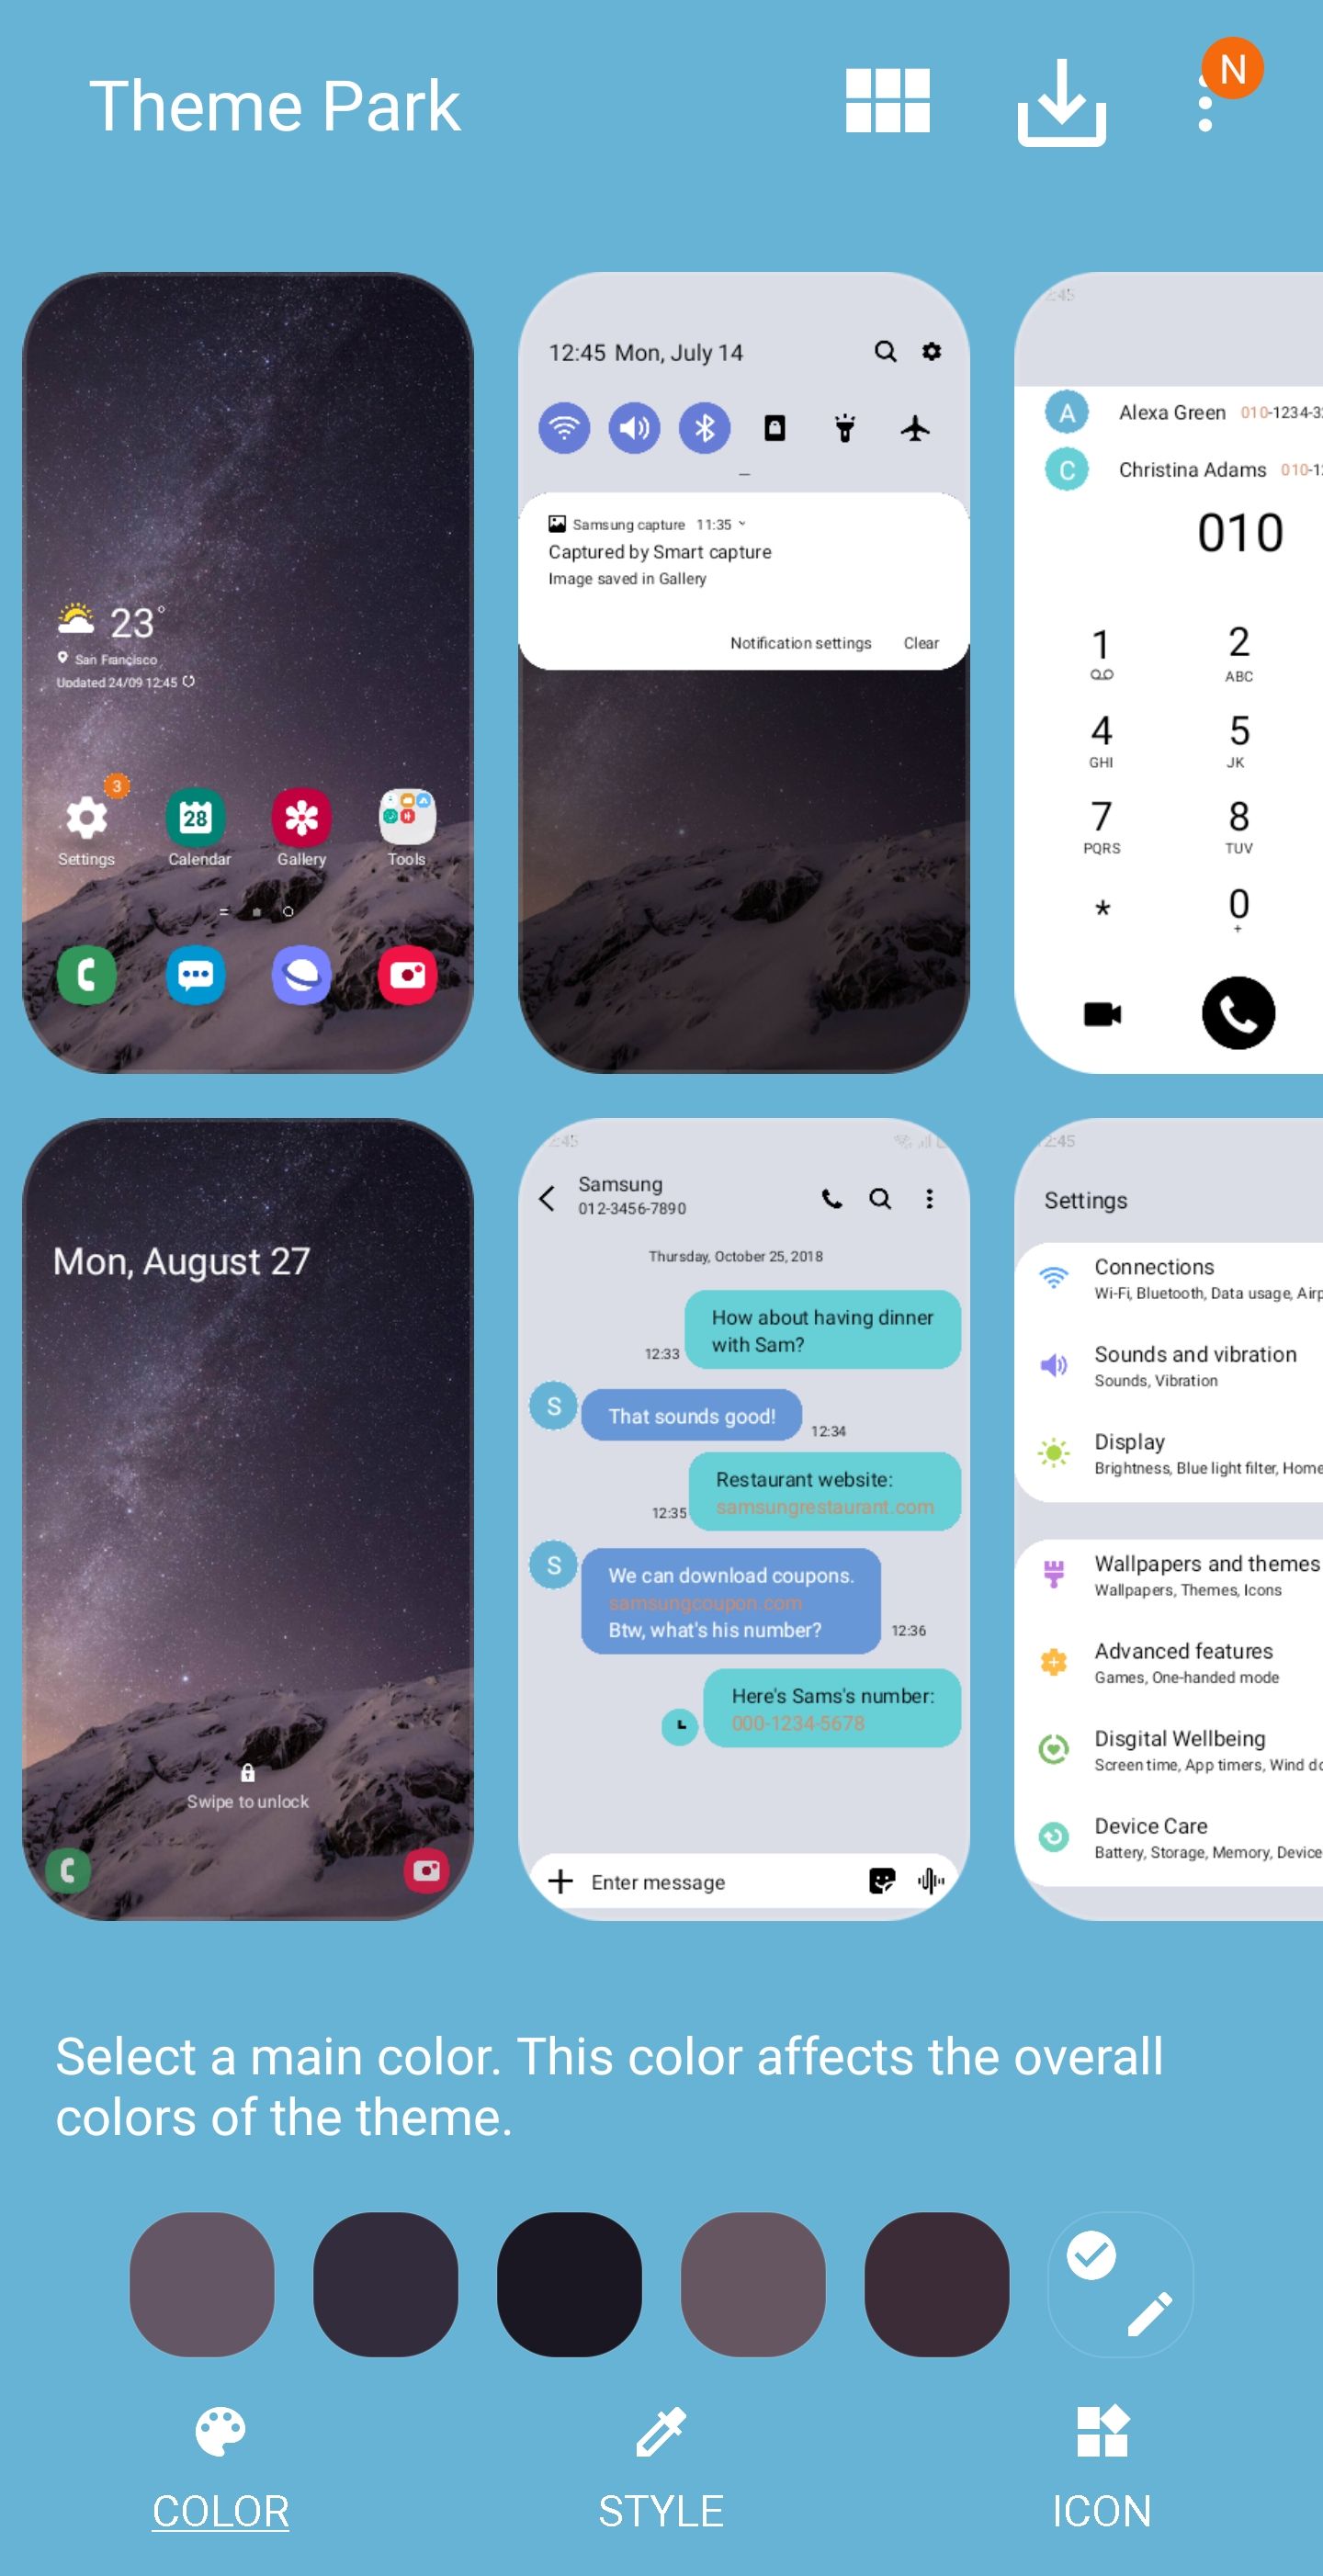 Khi bạn sử dụng tính năng thay đổi màu tin nhắn trên điện thoại Samsung, bạn có thể tạo ra các kiểu tin nhắn độc đáo và thể hiện cá tính riêng của mình. Hãy thử nghiệm và khám phá tính năng này để làm cho các cuộc trò chuyện của bạn càng thêm đặc biệt.